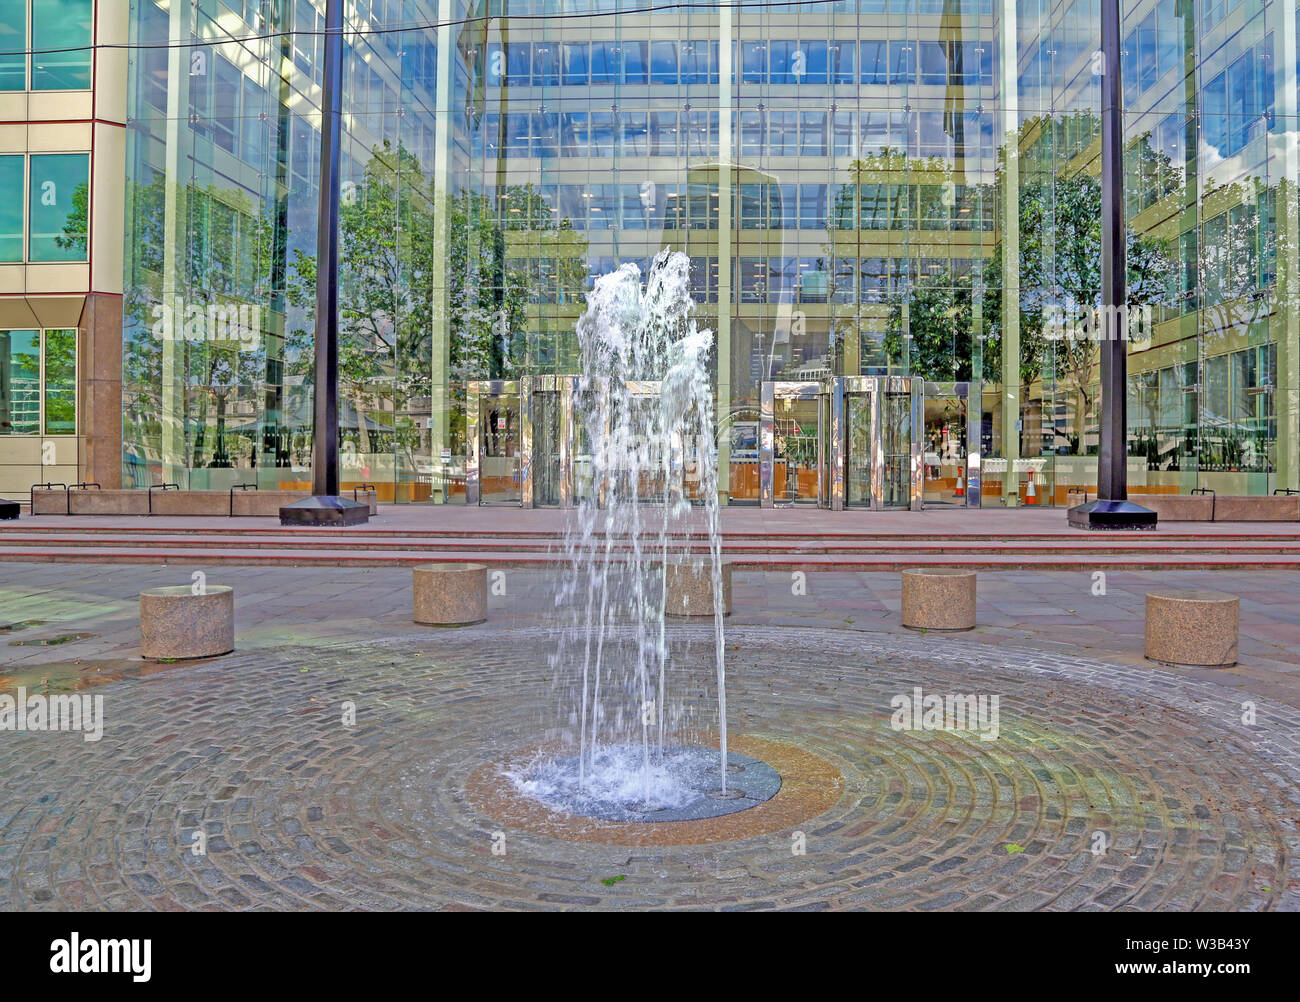 Londra, Gran Bretagna - 23 Maggio 2016: fontana in moderno complesso architettonico e di riflessioni in pareti di vetro Foto Stock